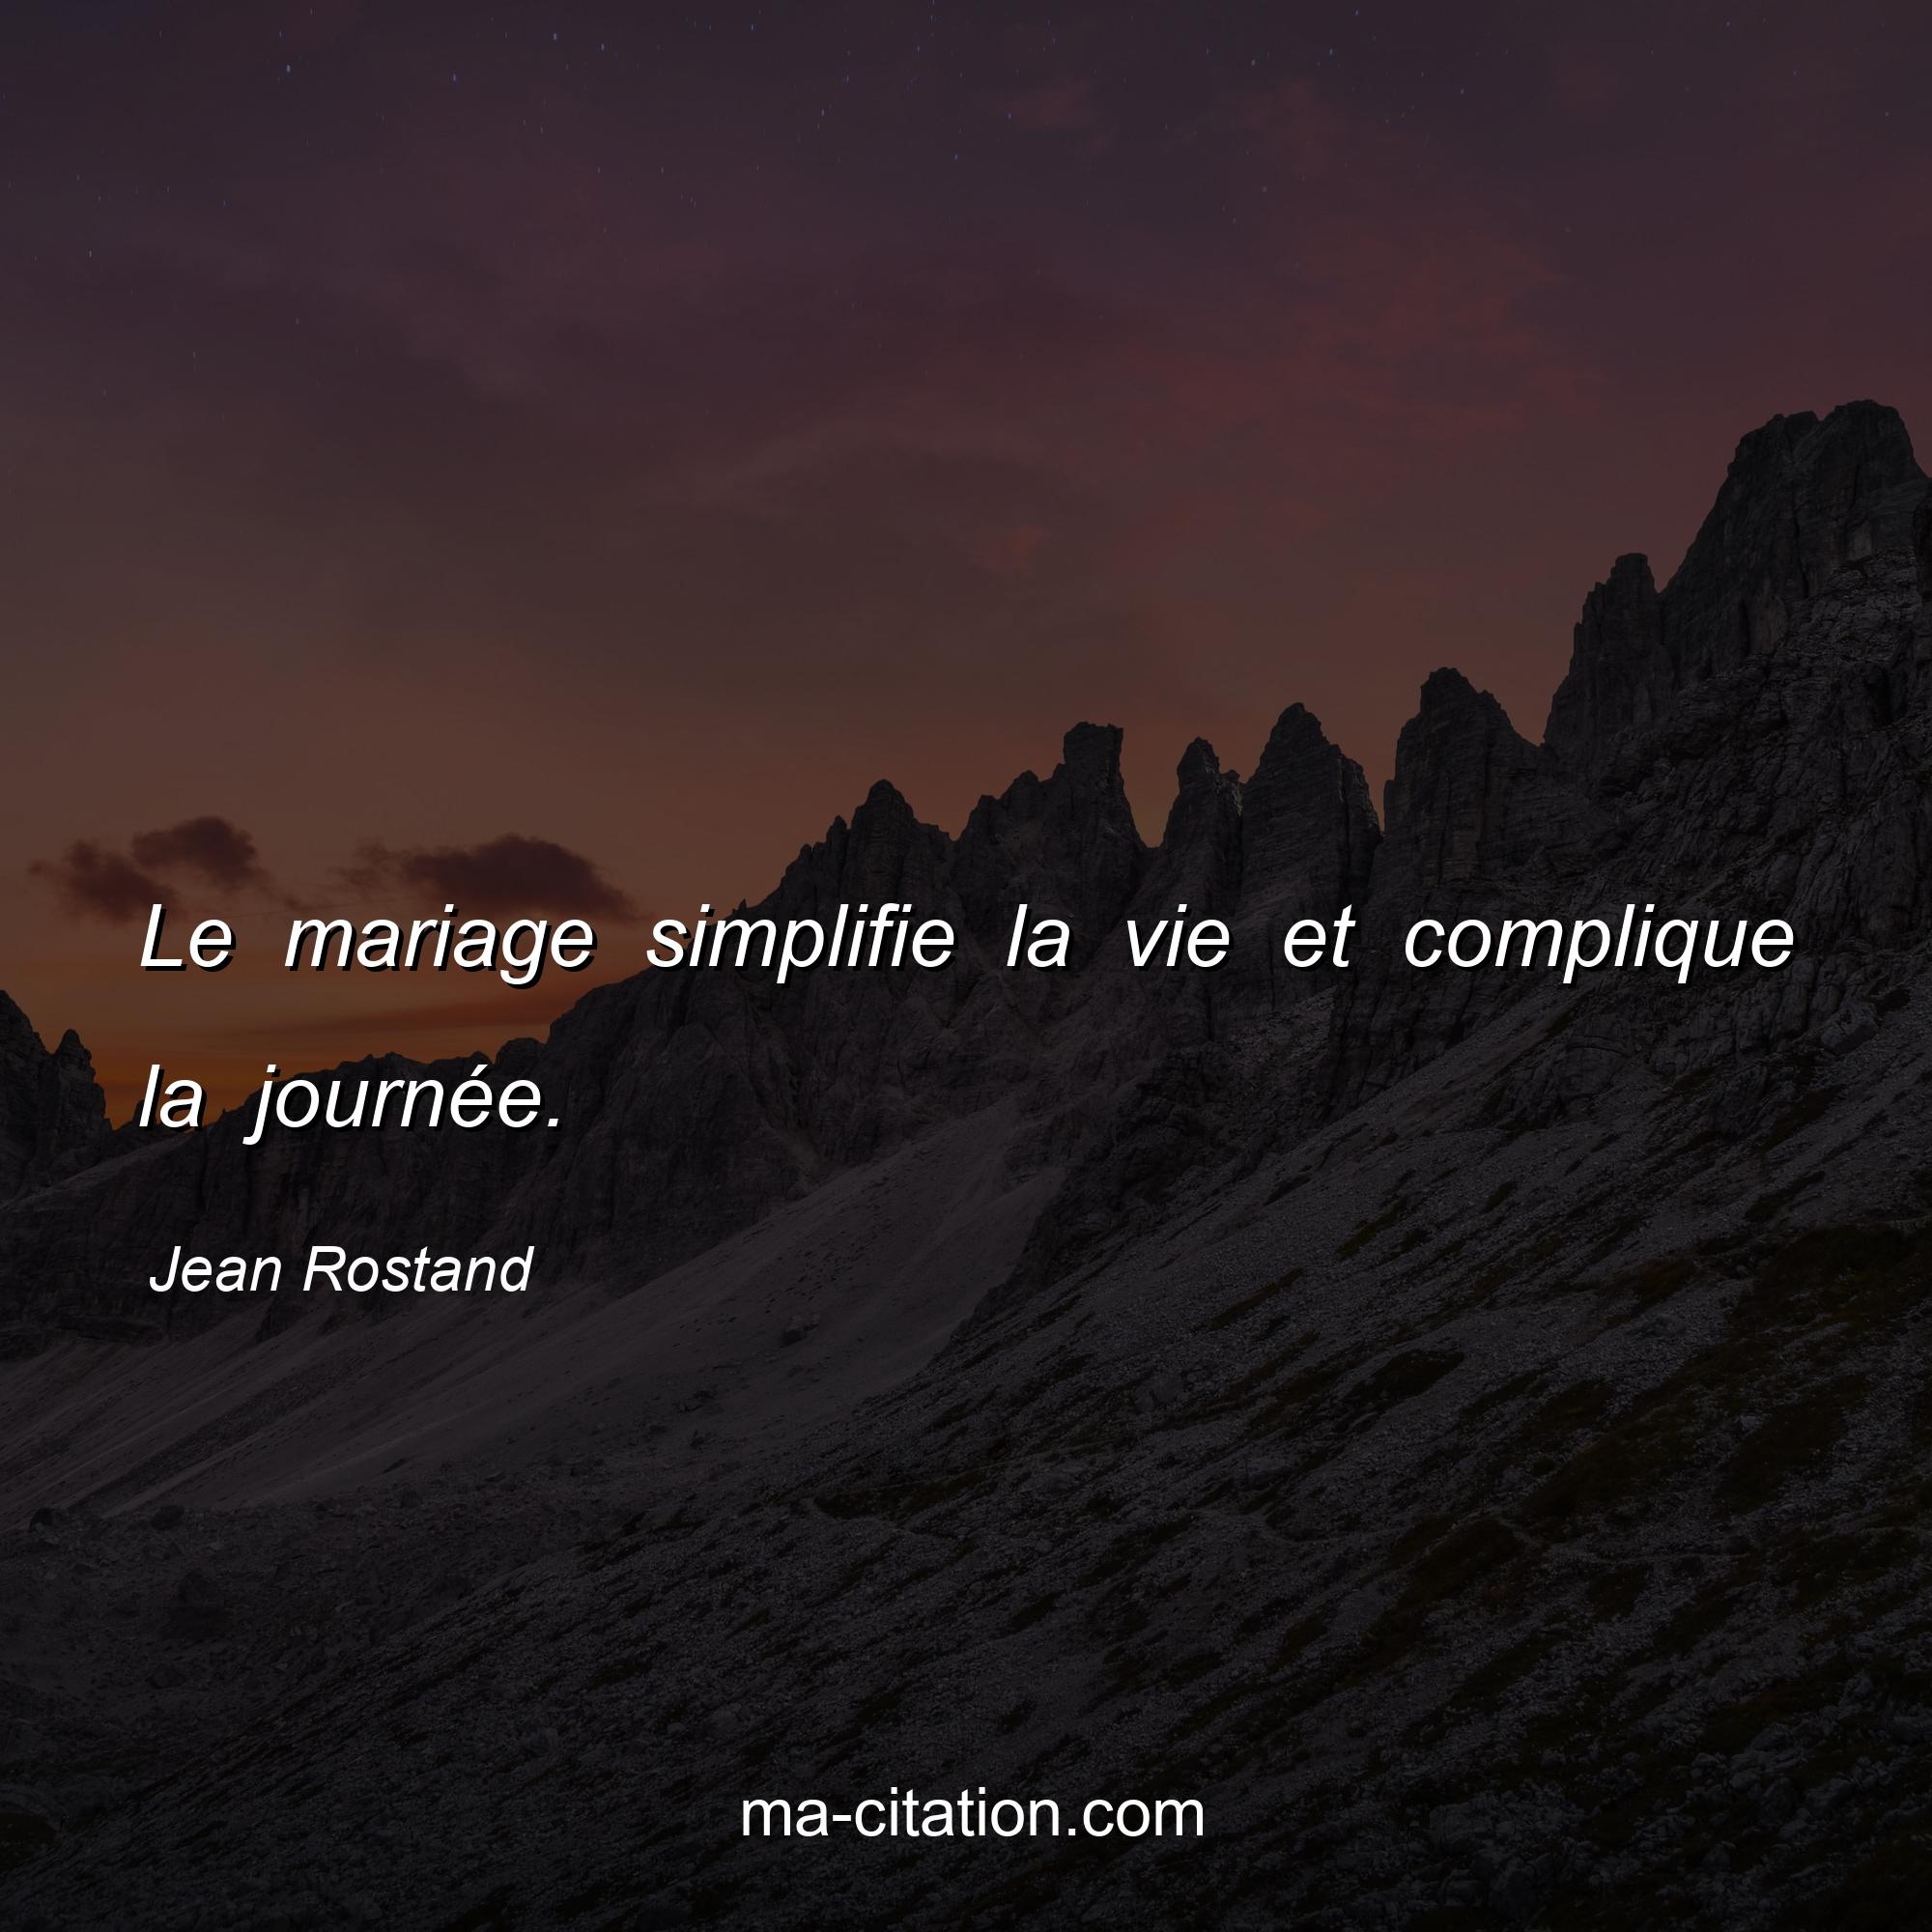 Jean Rostand : Le mariage simplifie la vie et complique la journée.